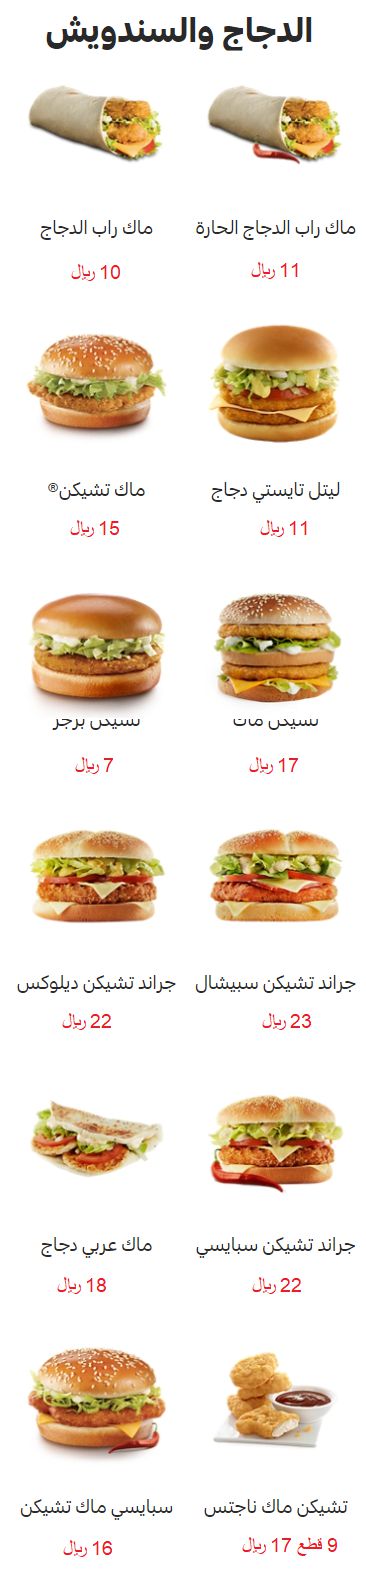 اسعار منيو مطعم «ماكدونالدز» السعودية , ماك رقم التوصيل والدليفري